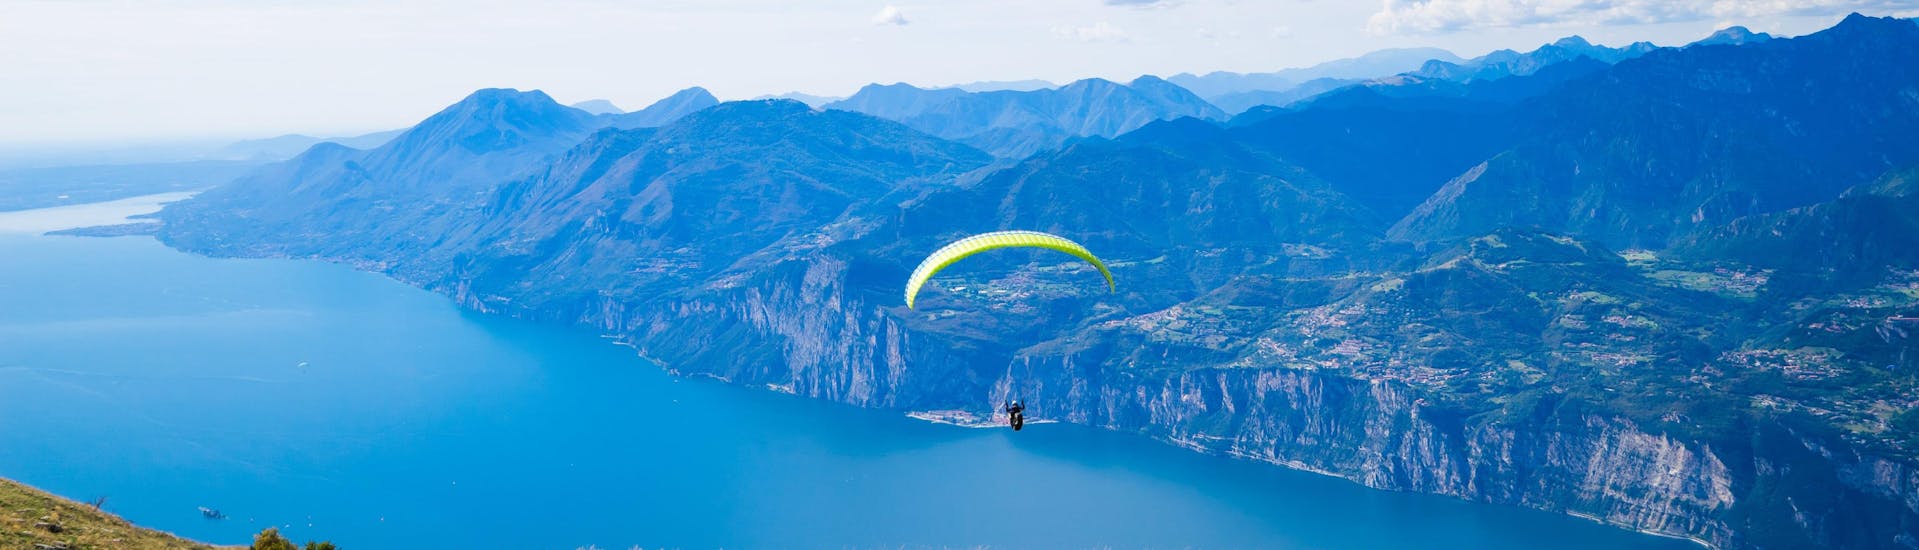 Ein einzelner Paraglider schwebt beim Paragliding am Gardasee über die malerische Landschaft.